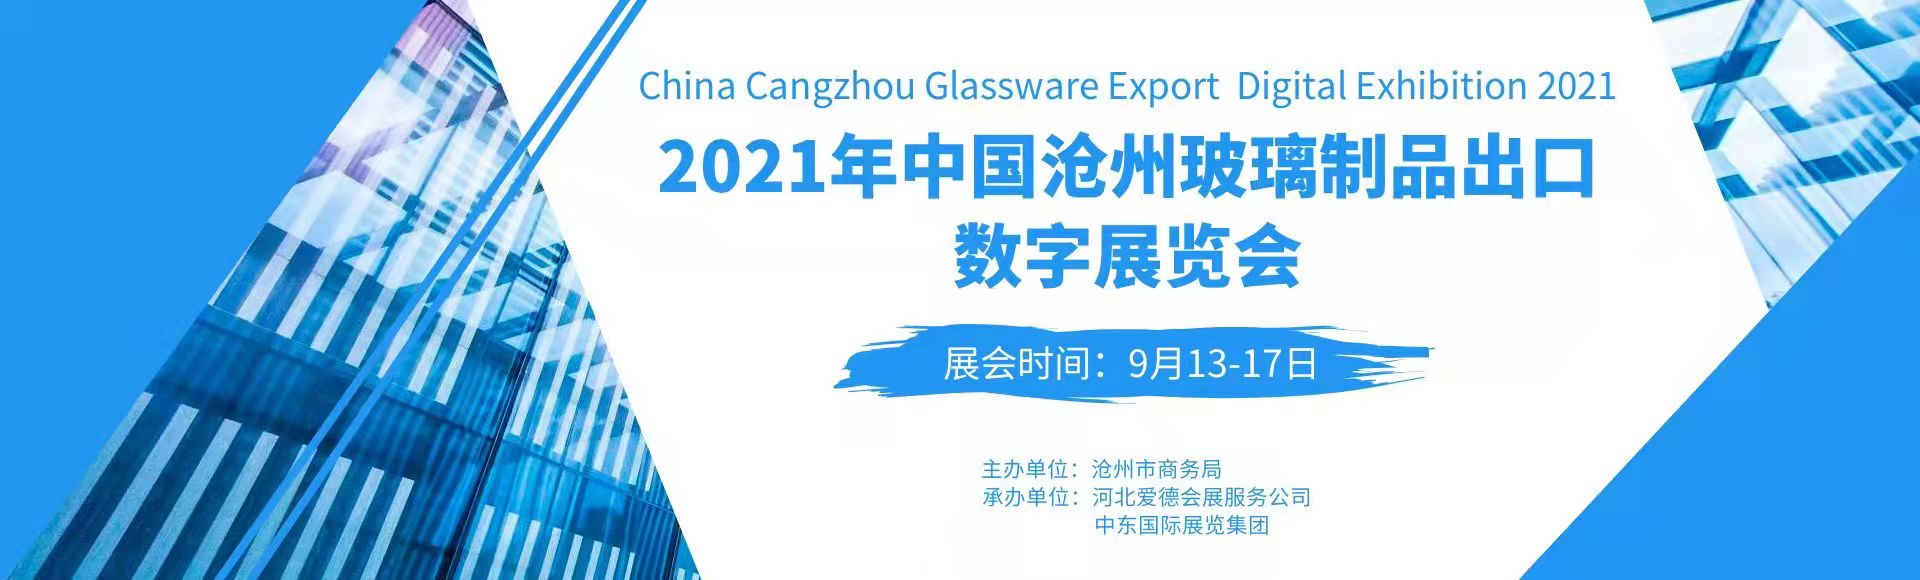 2021年中国（沧州）玻璃制品出口数字<font color=#ff0000>展览</font>会即将开幕